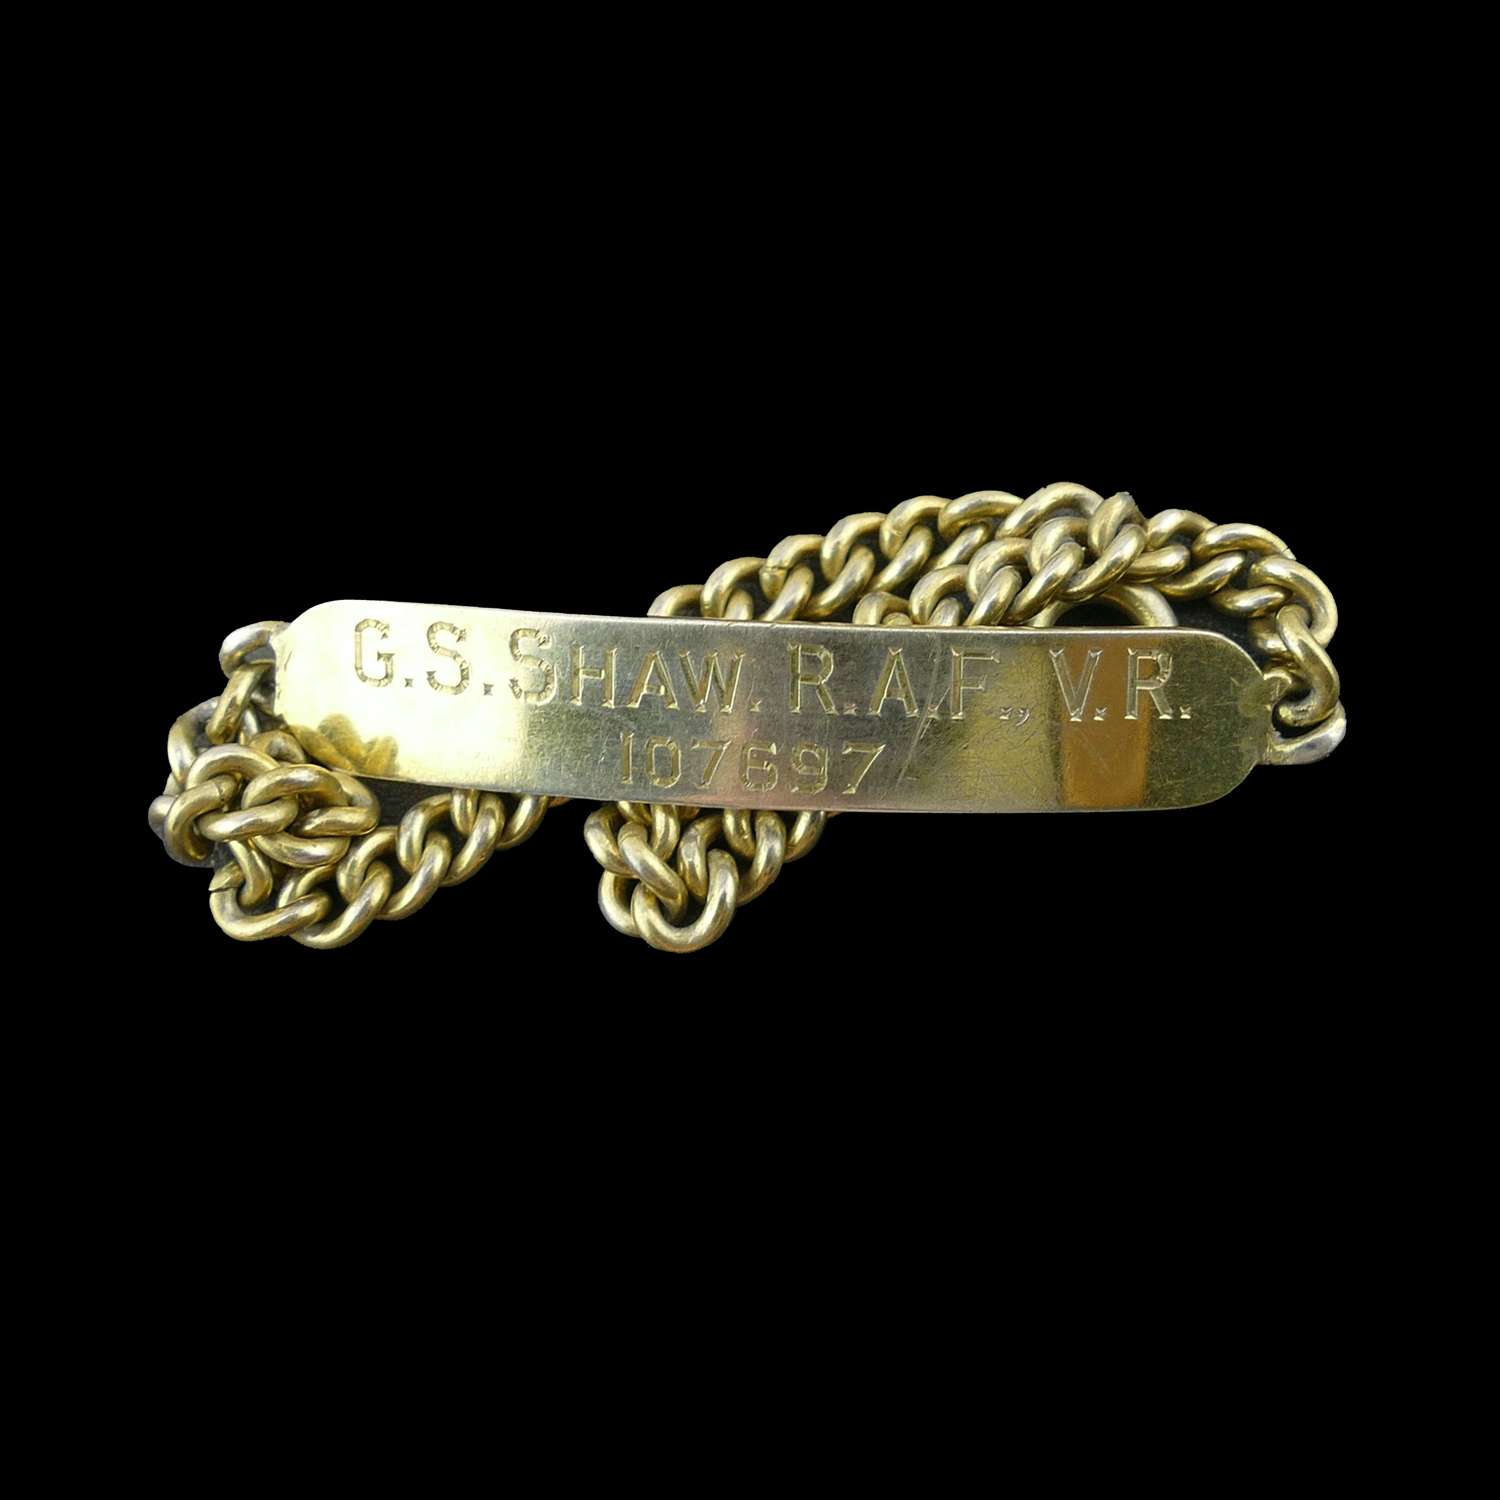 RAF man's identity bracelet